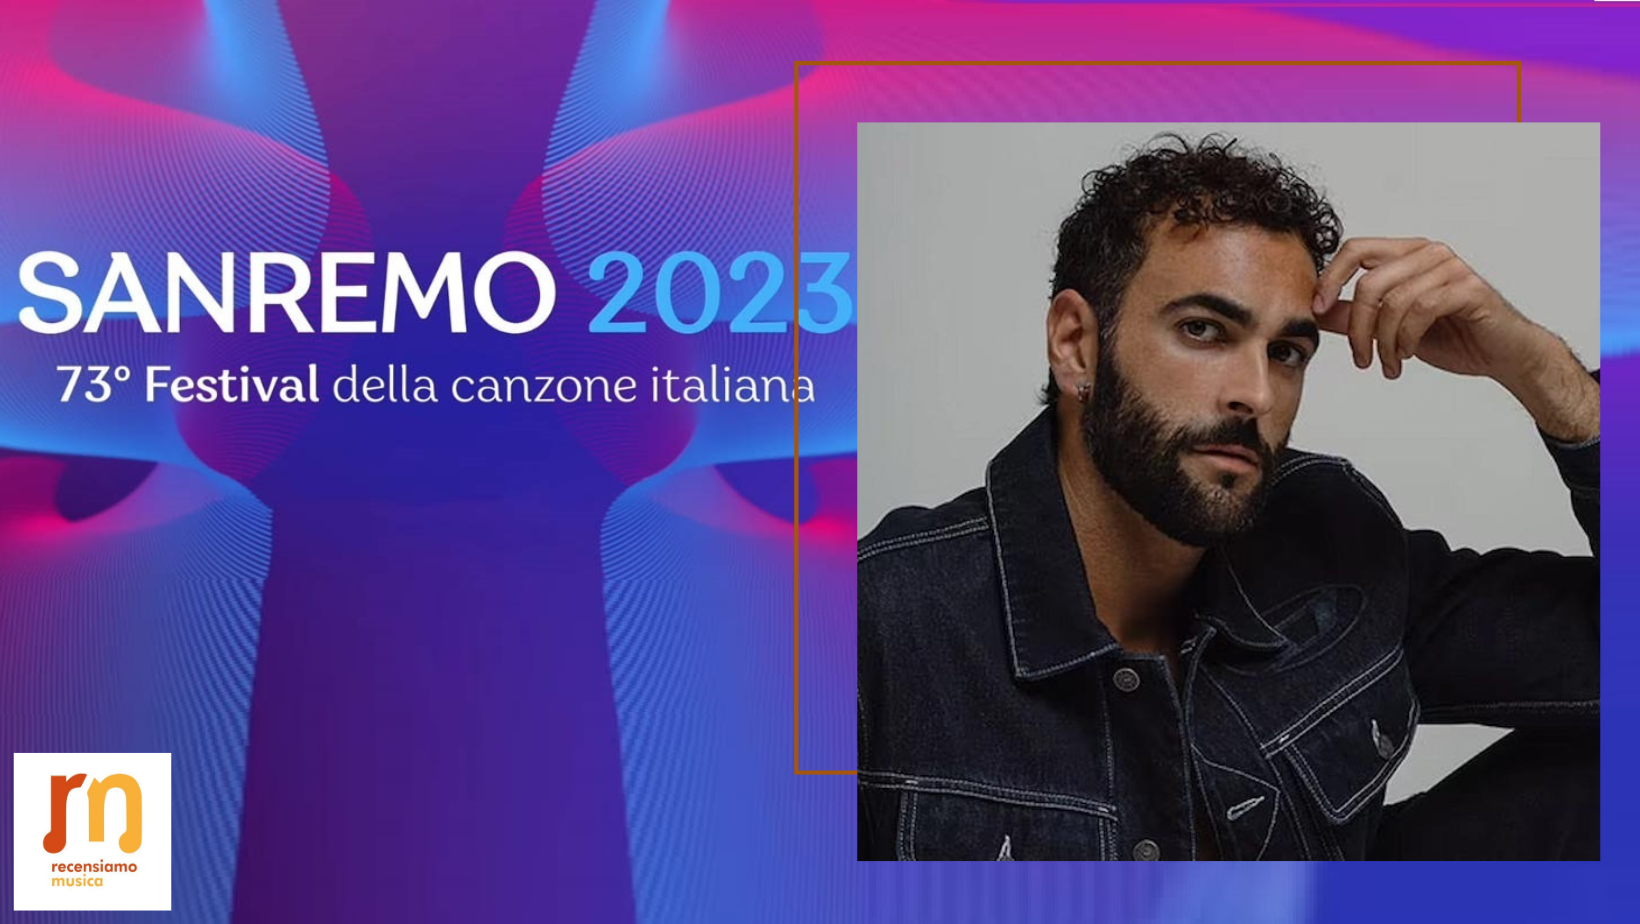 Marco Mengoni Sanremo 2023